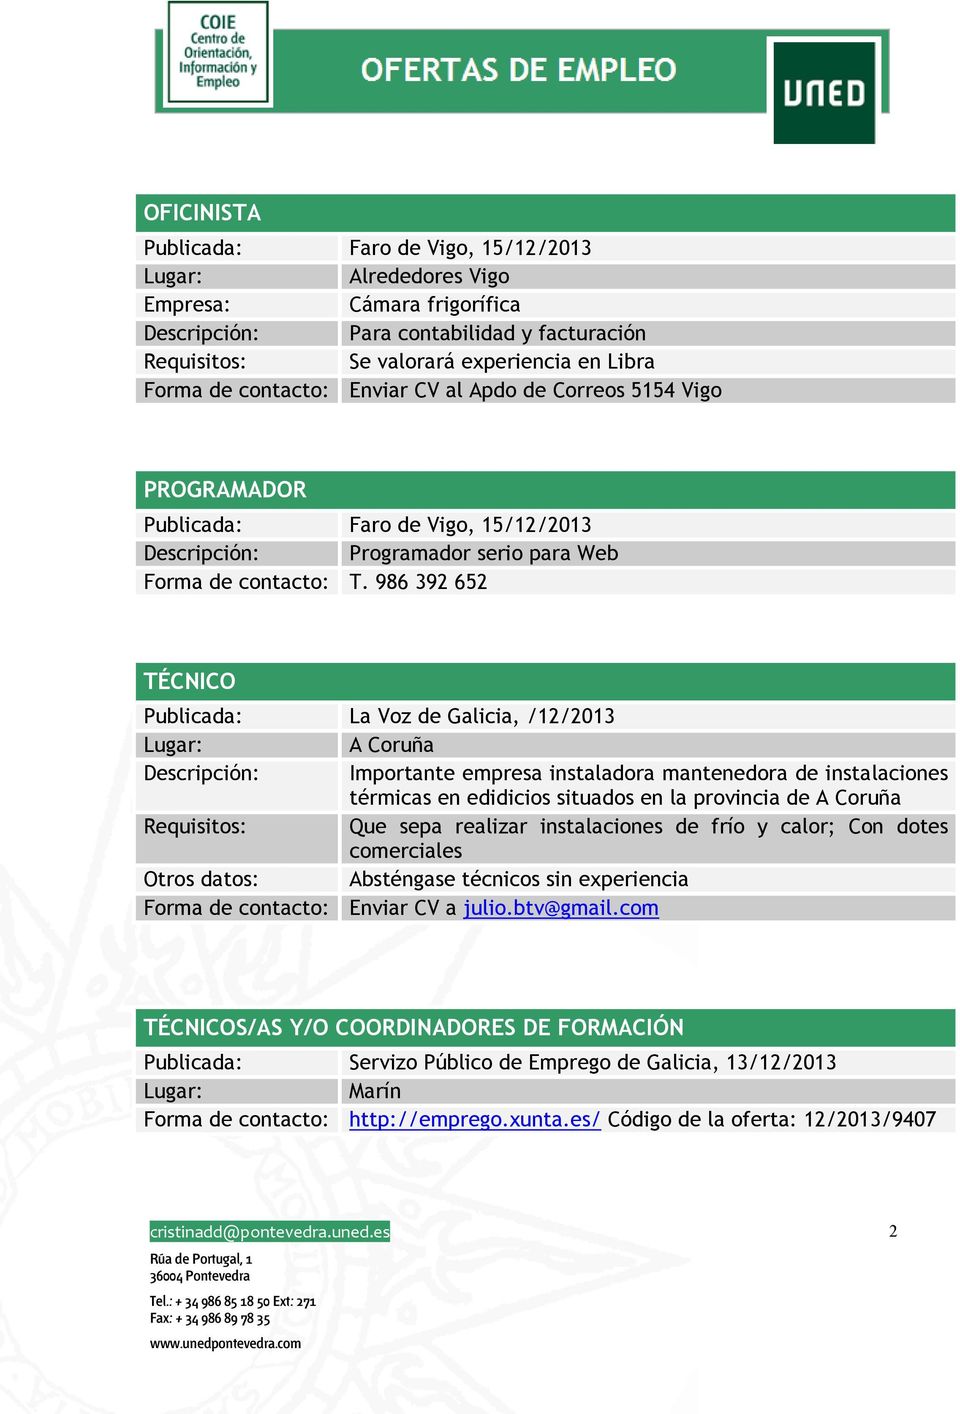 986 392 652 TÉCNICO Publicada: La Voz de Galicia, /12/2013 Descripción: Importante empresa instaladora mantenedora de instalaciones térmicas en edidicios situados en la provincia de Requisitos: Que